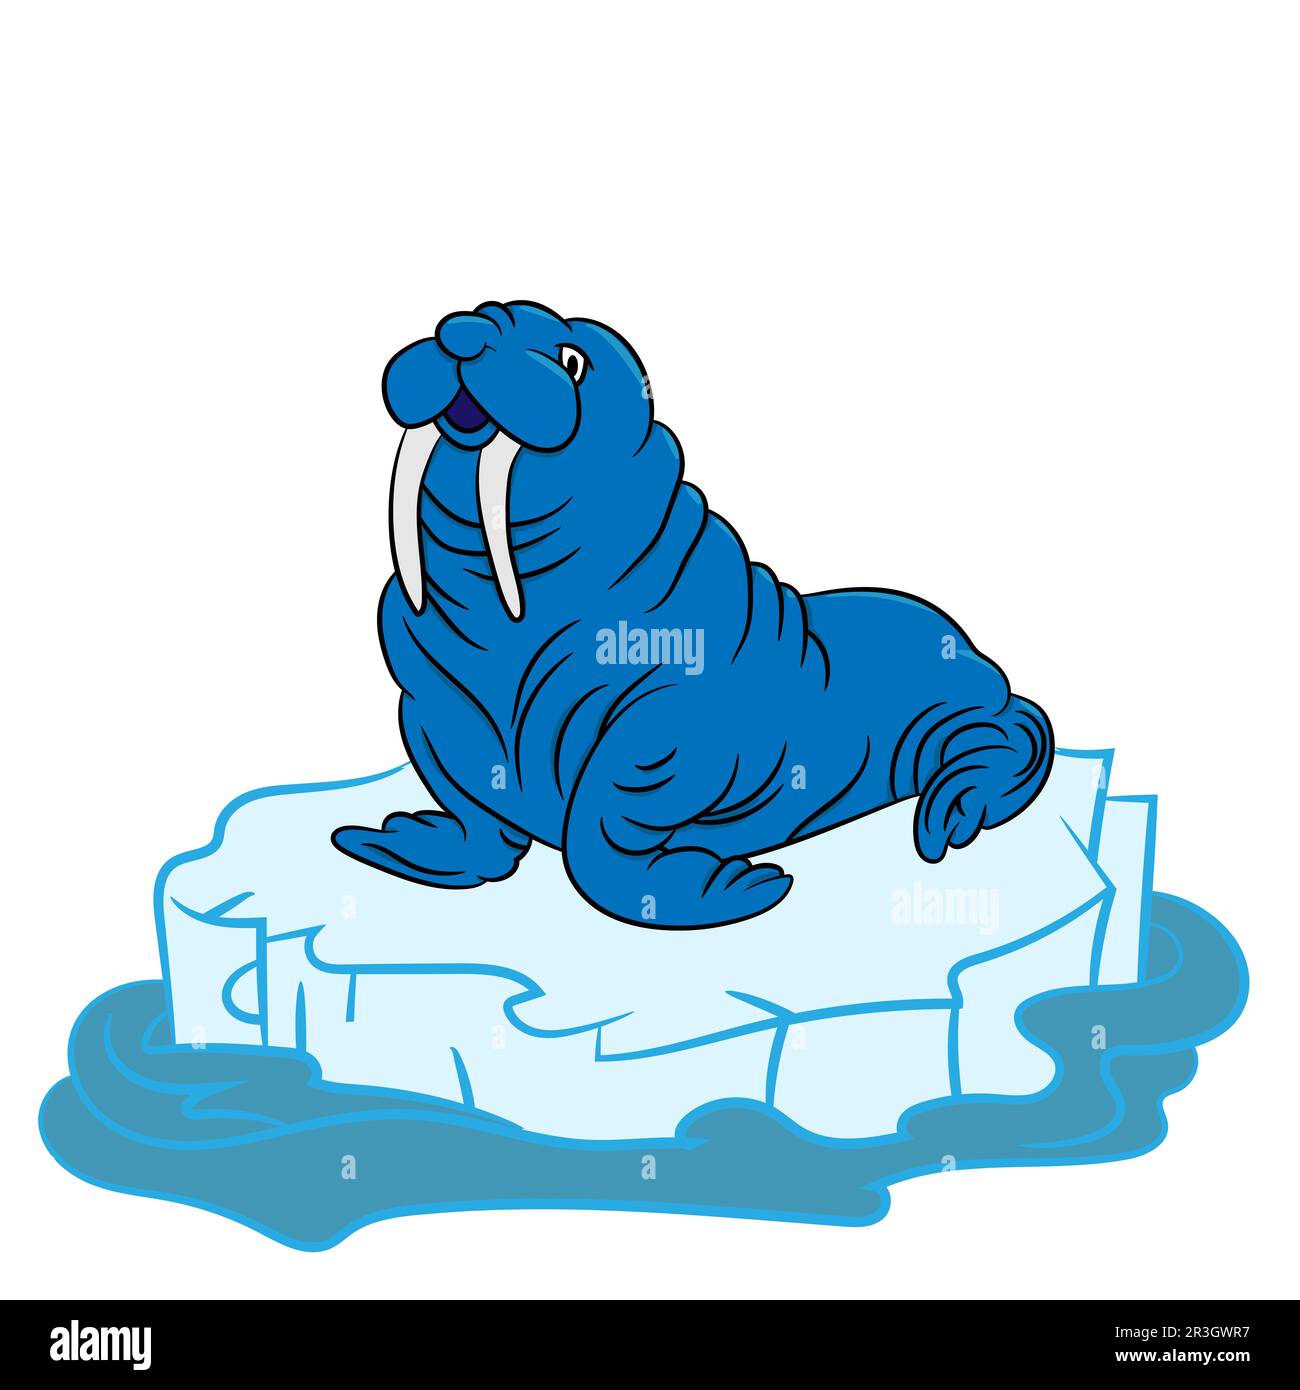 Cartoon-Zeichnung eines Walroses auf einer Eisscholle in der Arktis, Vektorgrafik Stockfoto